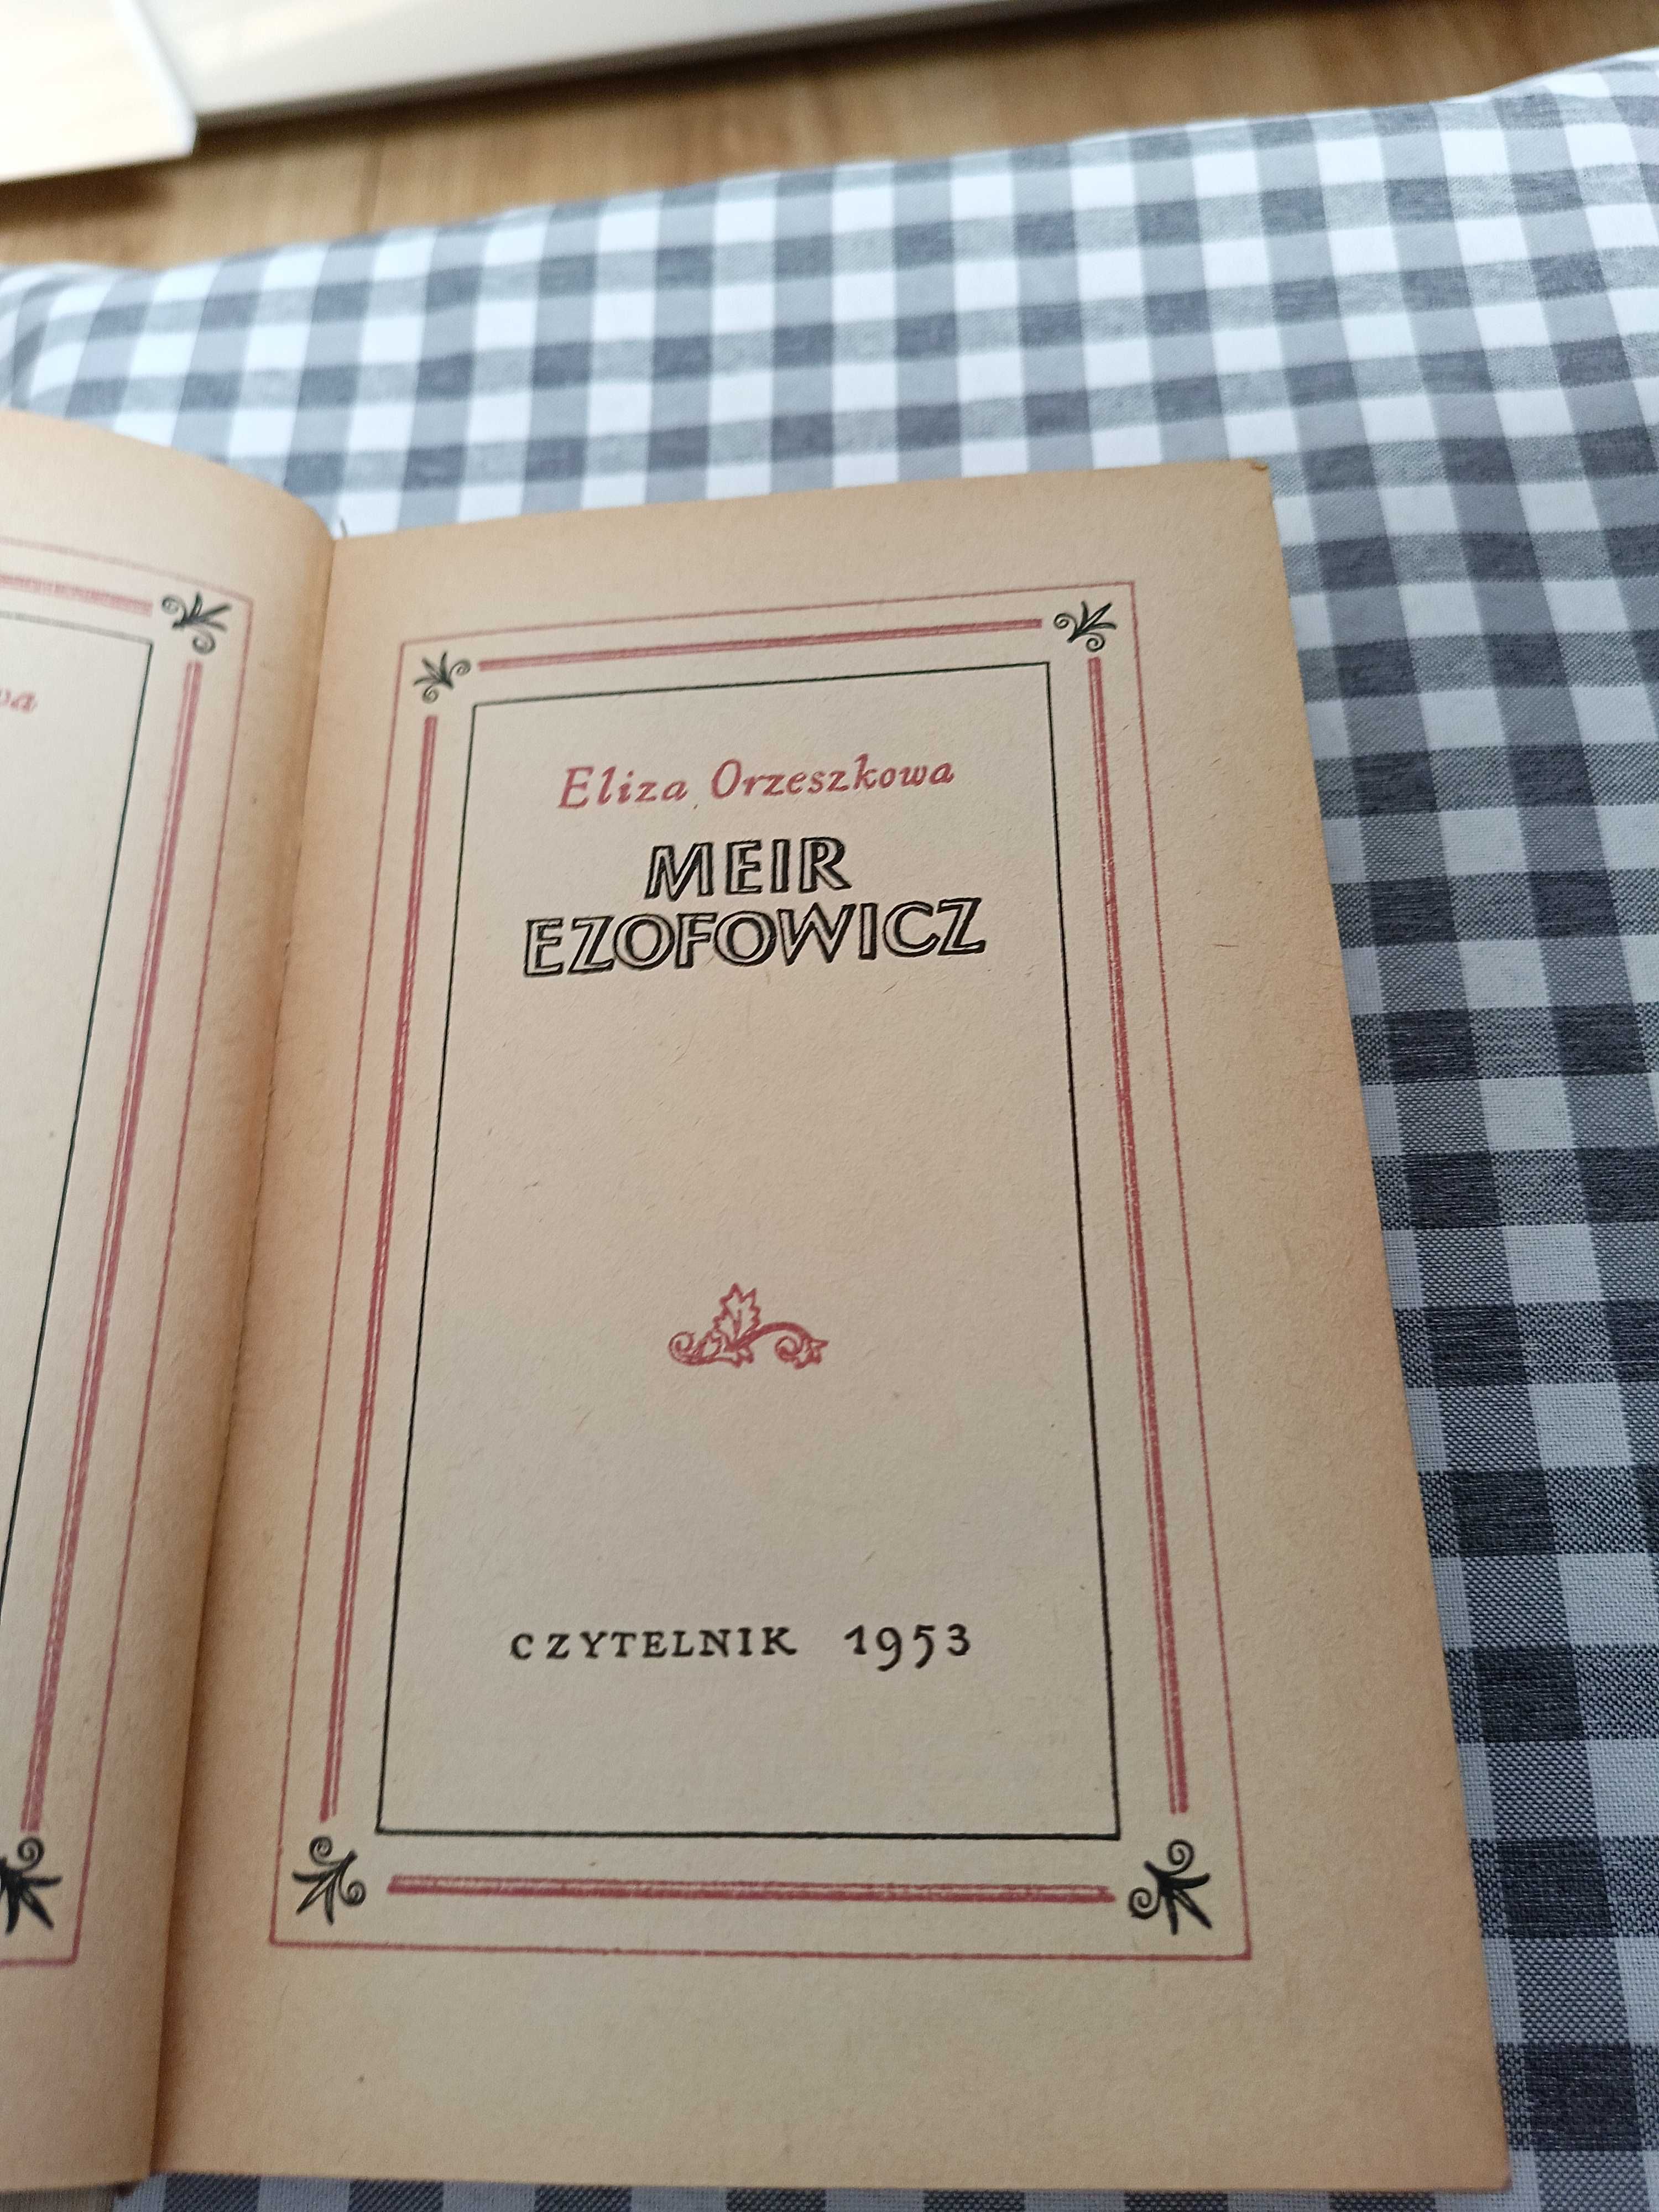 Książka "Meir Ezofowicz"